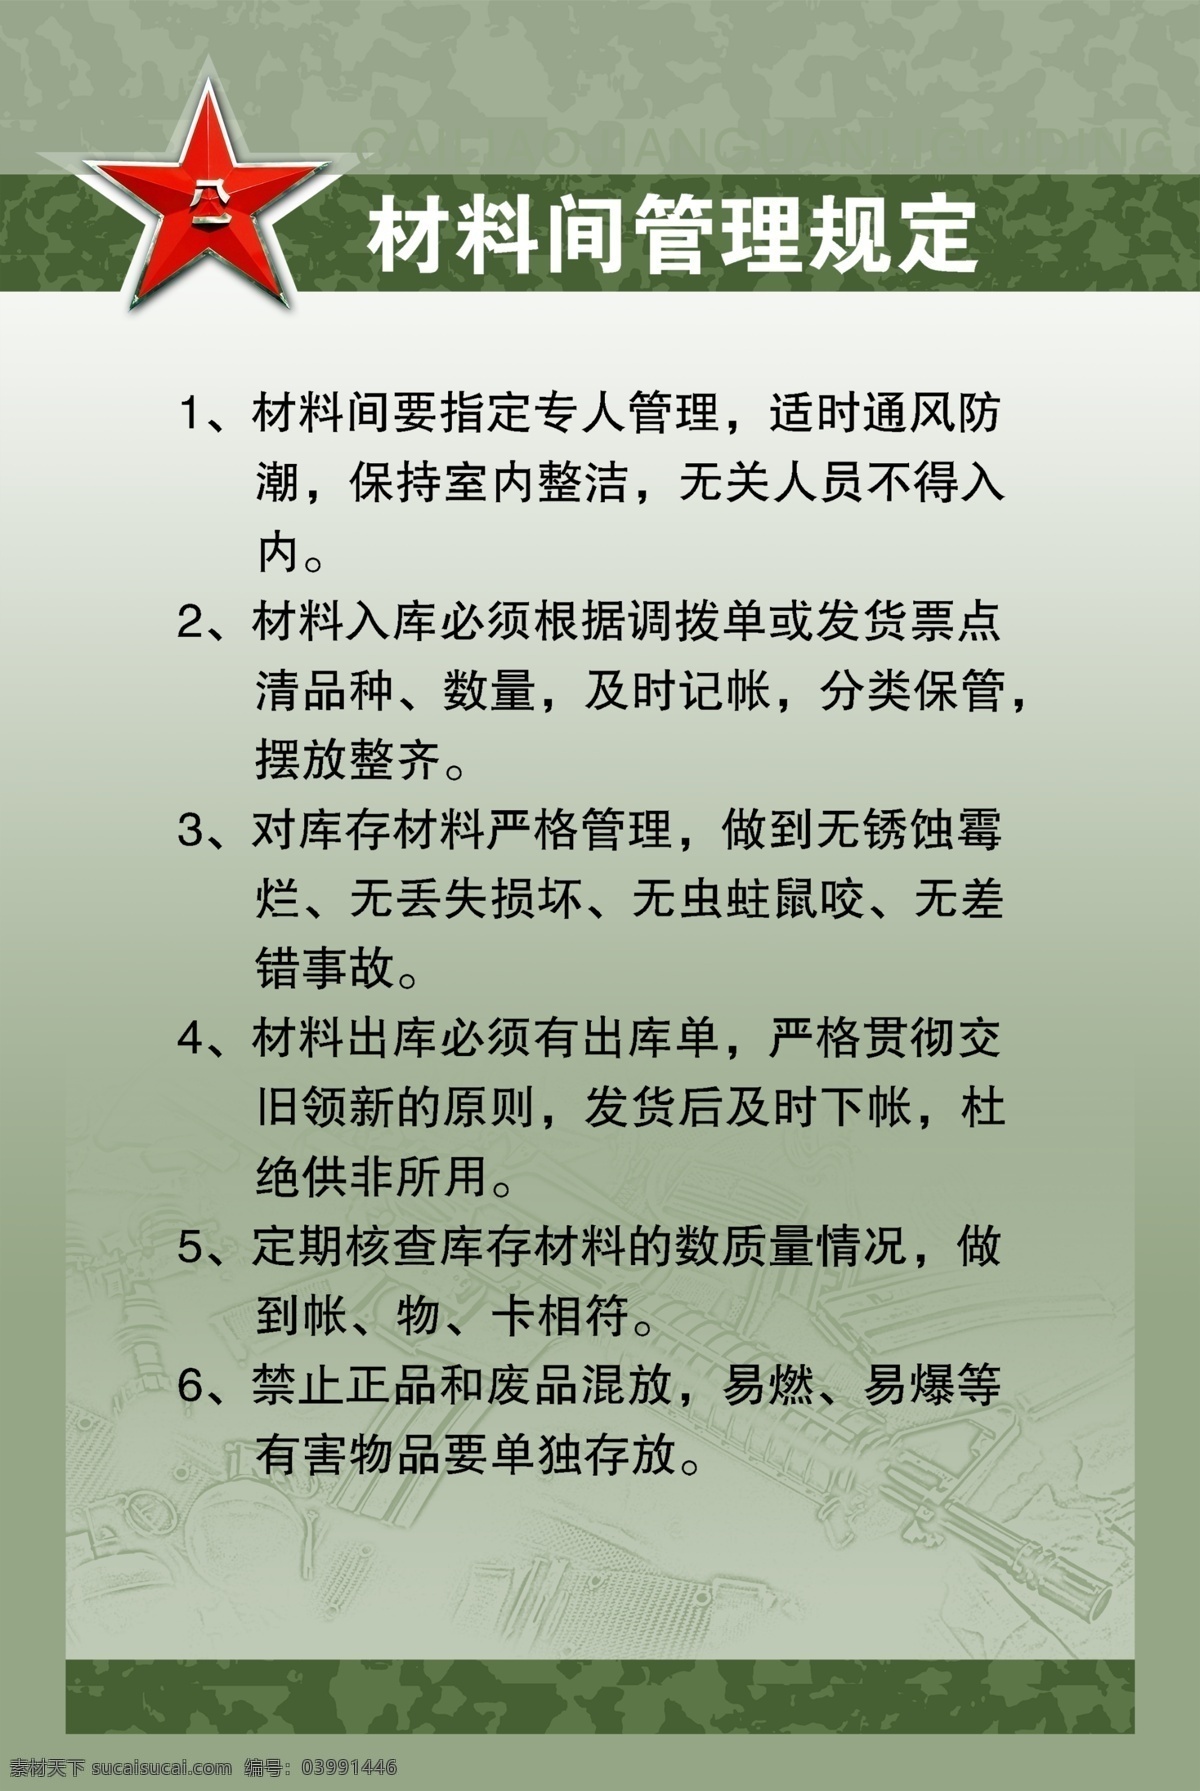 材料 管理 展板 八一 广告设计模板 源文件 展板模板 材料管理展板 规定 文字可改 中国军队 模版 系列 其他展板设计